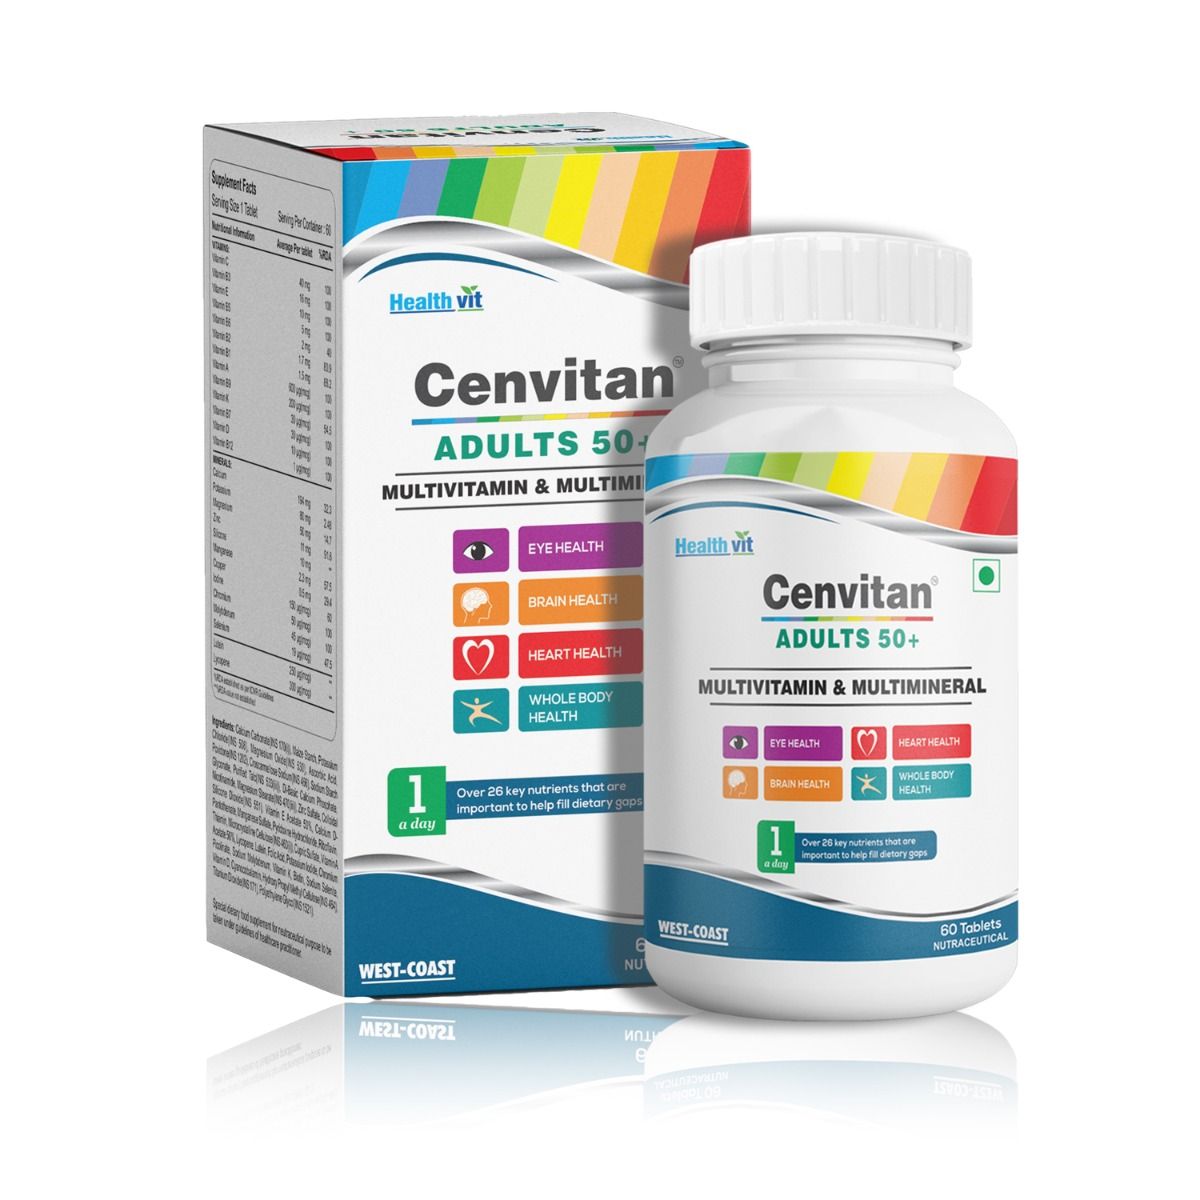 Buy Healthvit Cenvitan Adults 50+ Multivitamin & Multimineral, 60 Tablets Online